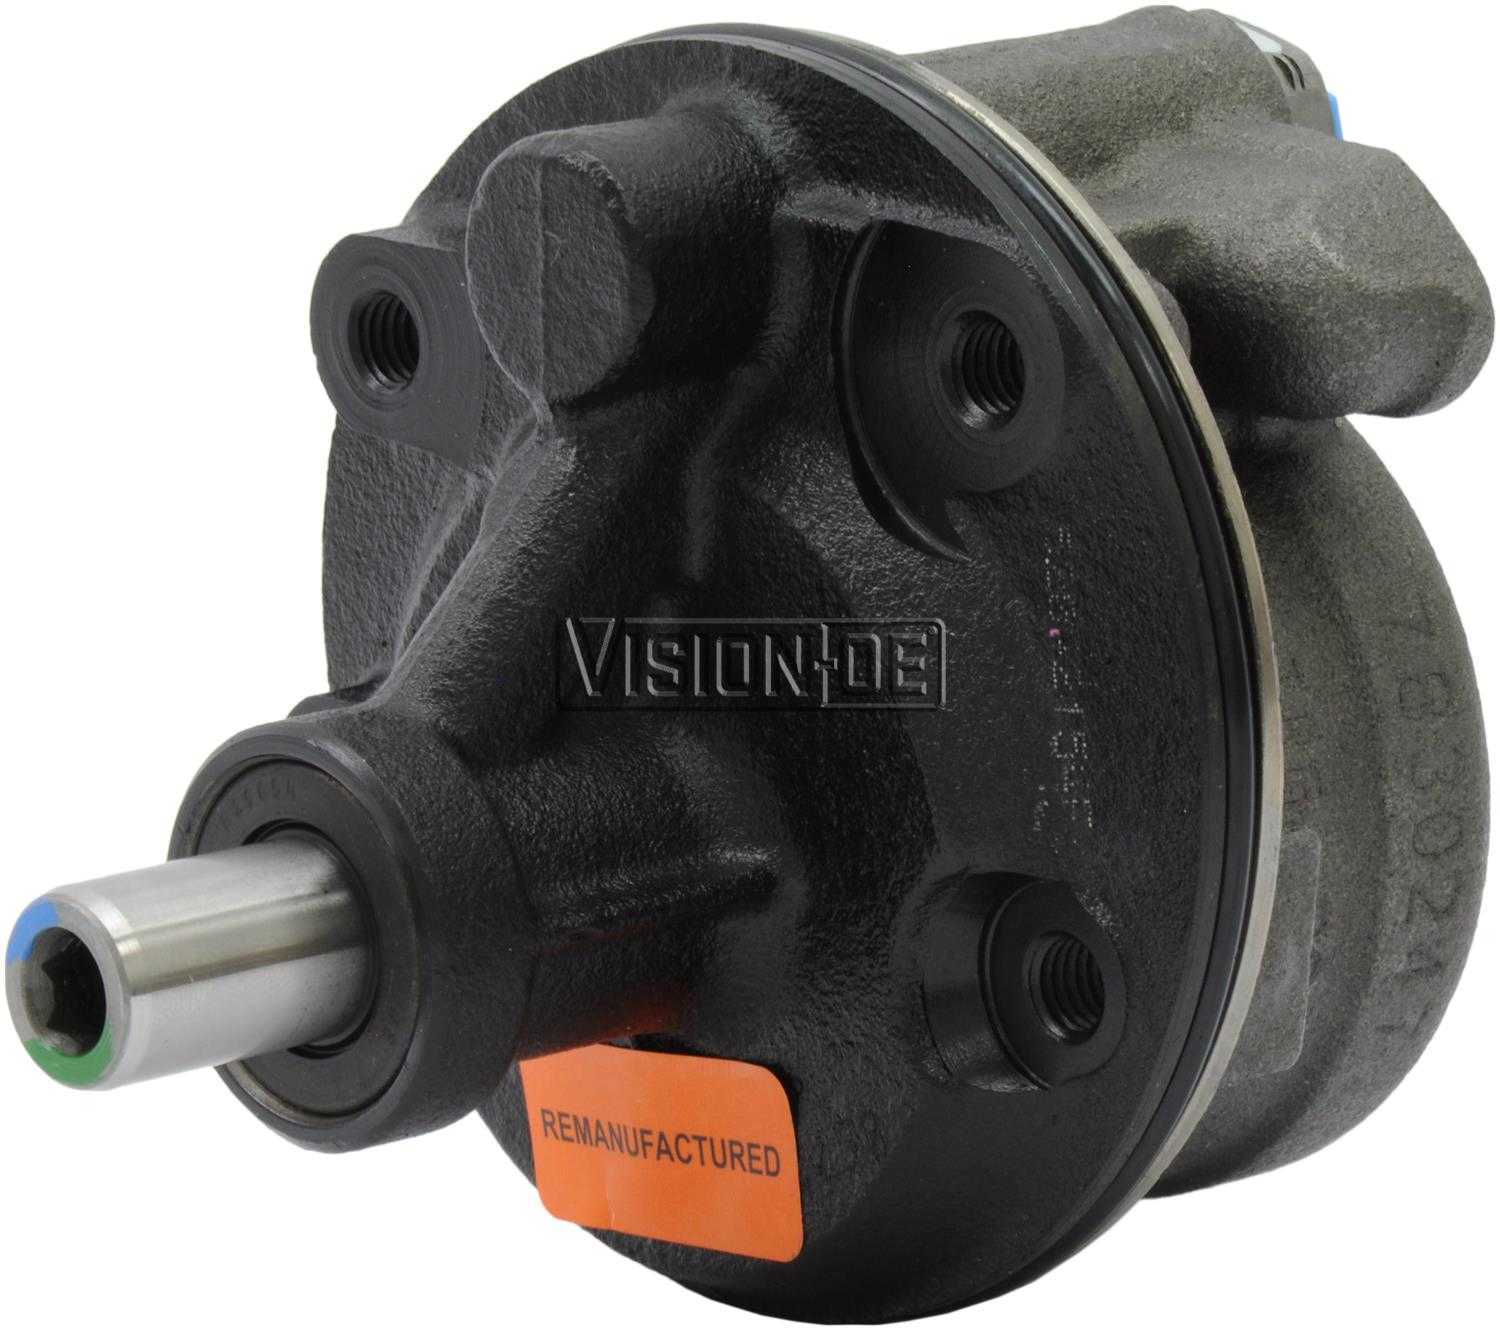 VISION-OE - Reman Power Steering Pump - VOE 731-0118